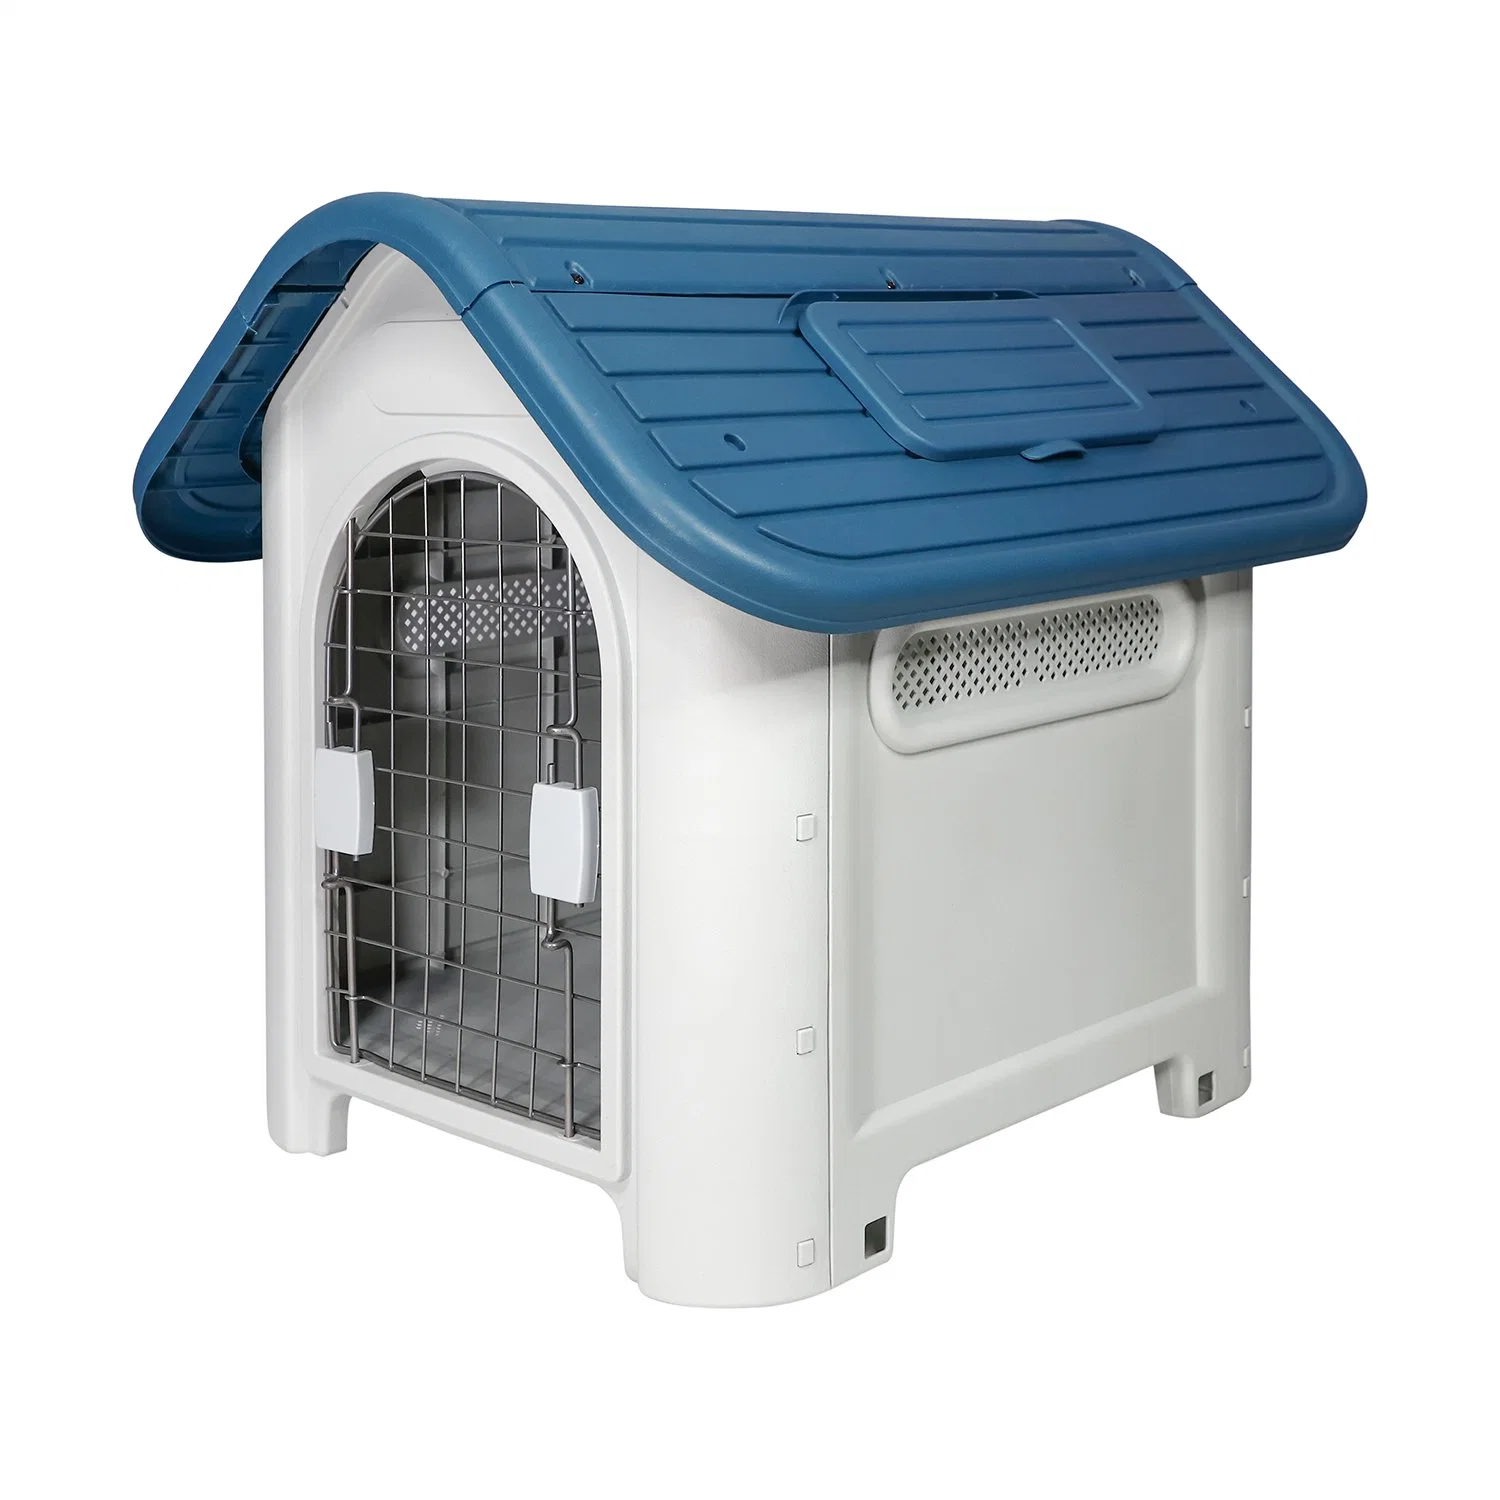 Cão material PP ecológico e fácil de montar moderno e vendido a quente Canil All-Season disponibilidade Weatherproof ventilate Plastic Outdoor Pet House